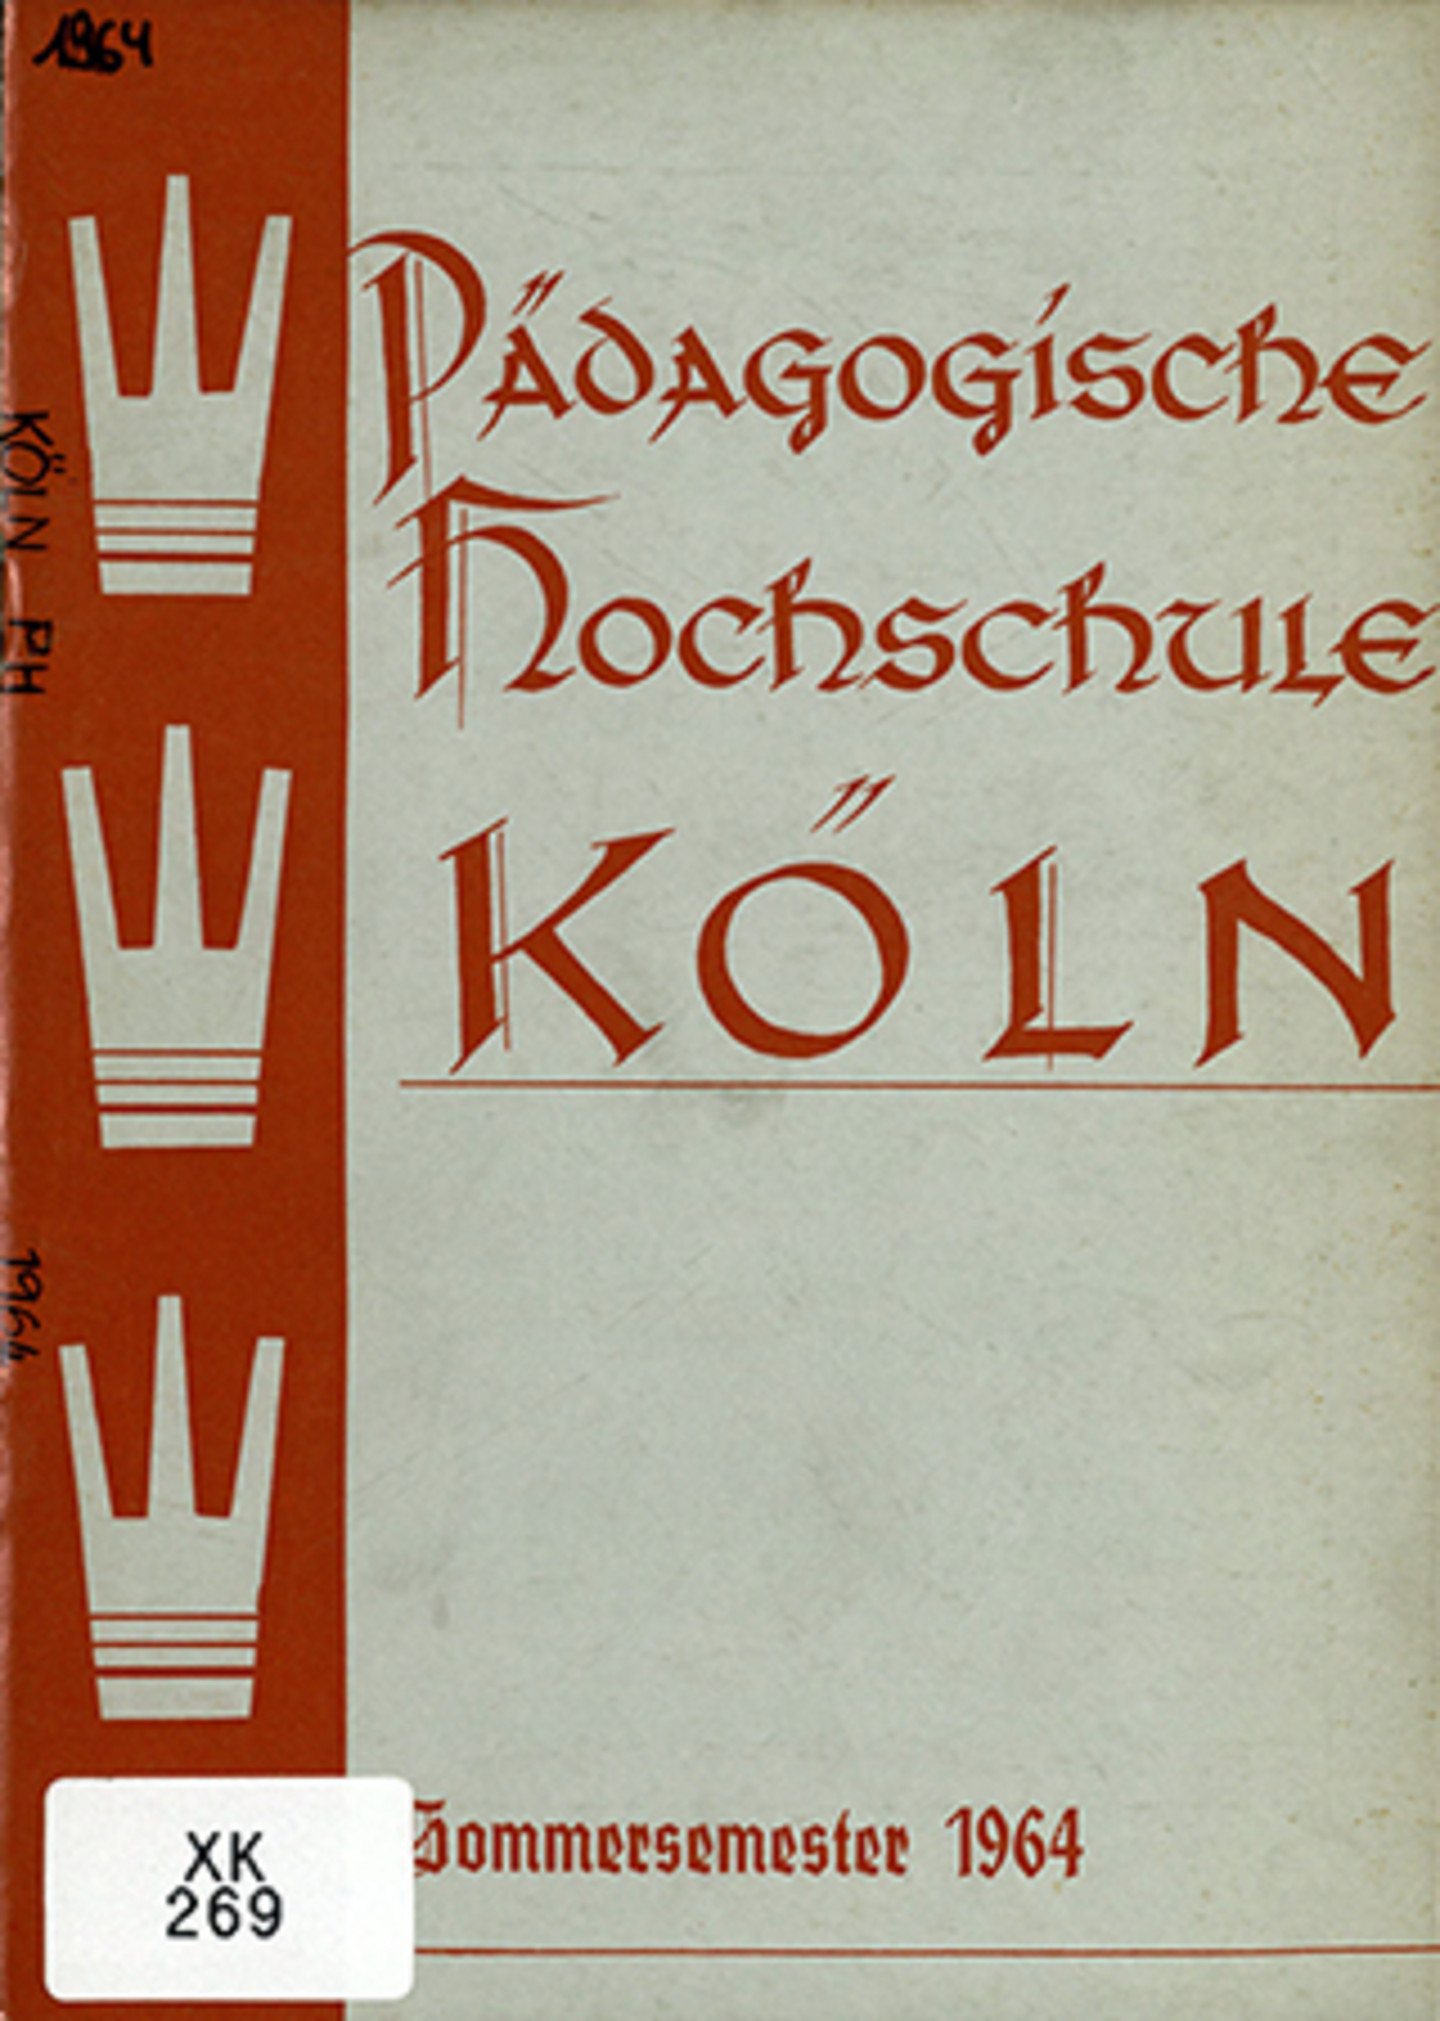 Titelblatt eines Vorlesungsverzeichnisses aus dem Jahr 1964.